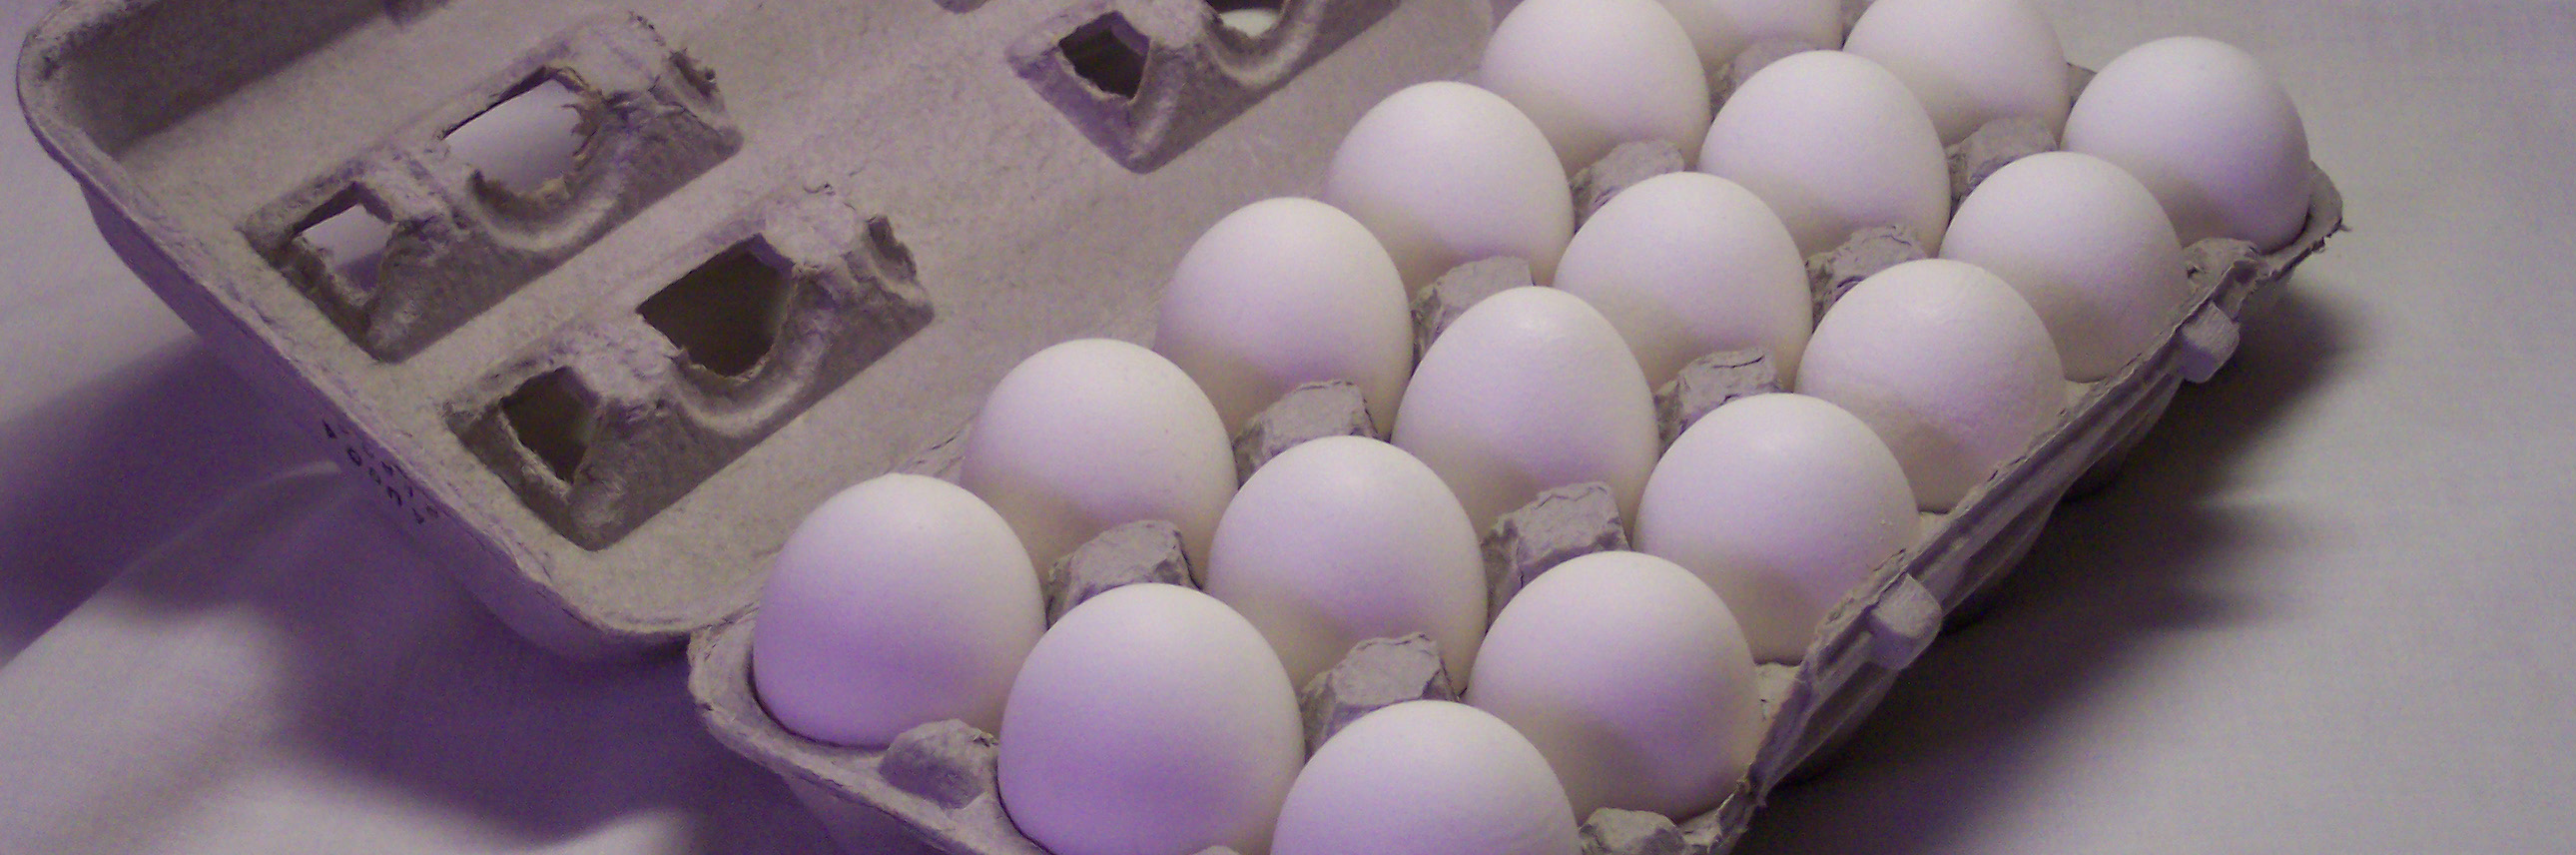 افزایش 25 درصدی تولید و صادرات تخم مرغ در اصفهان